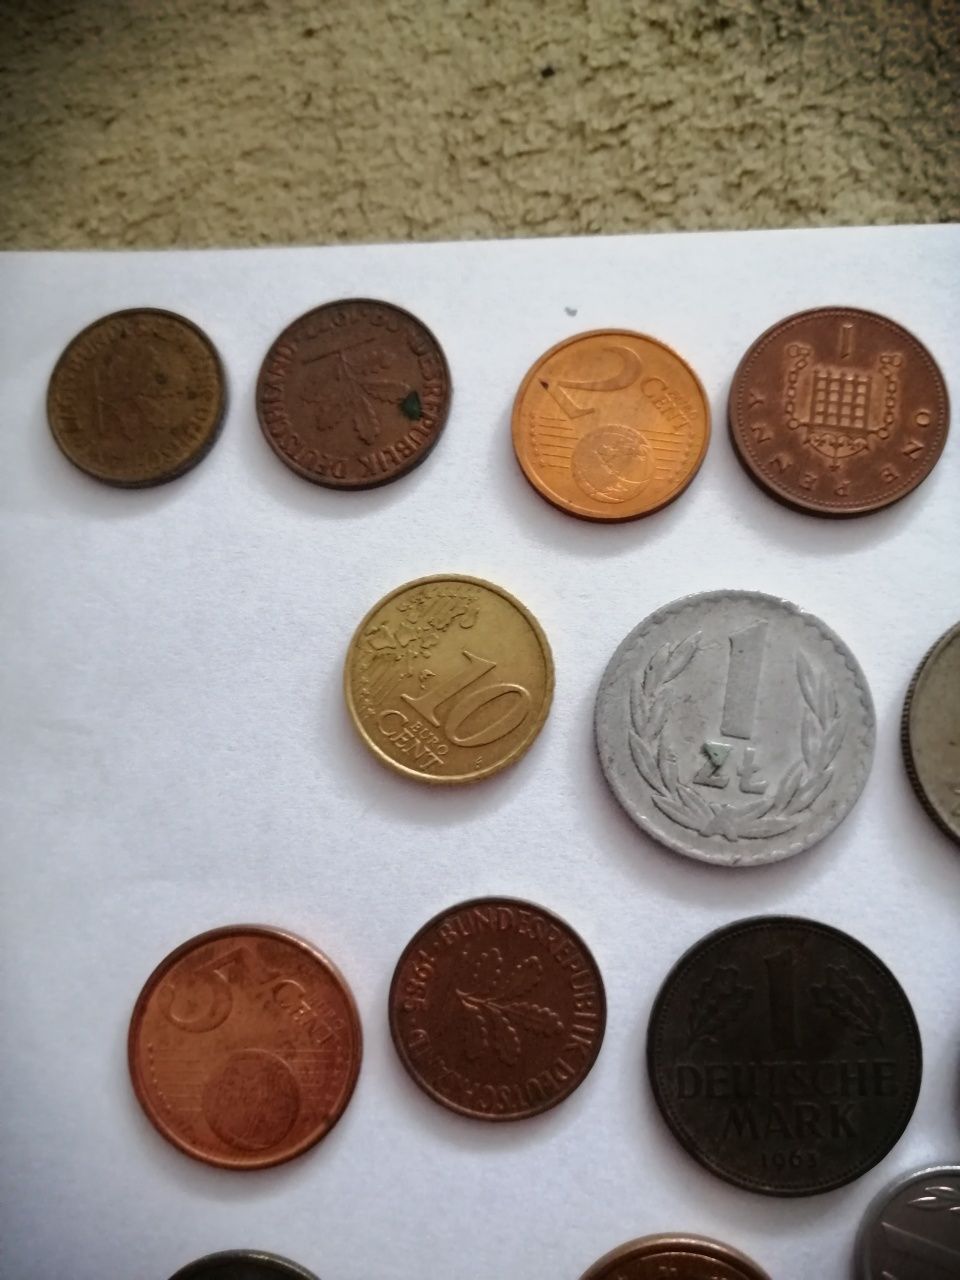 Stare monety różnych krajów